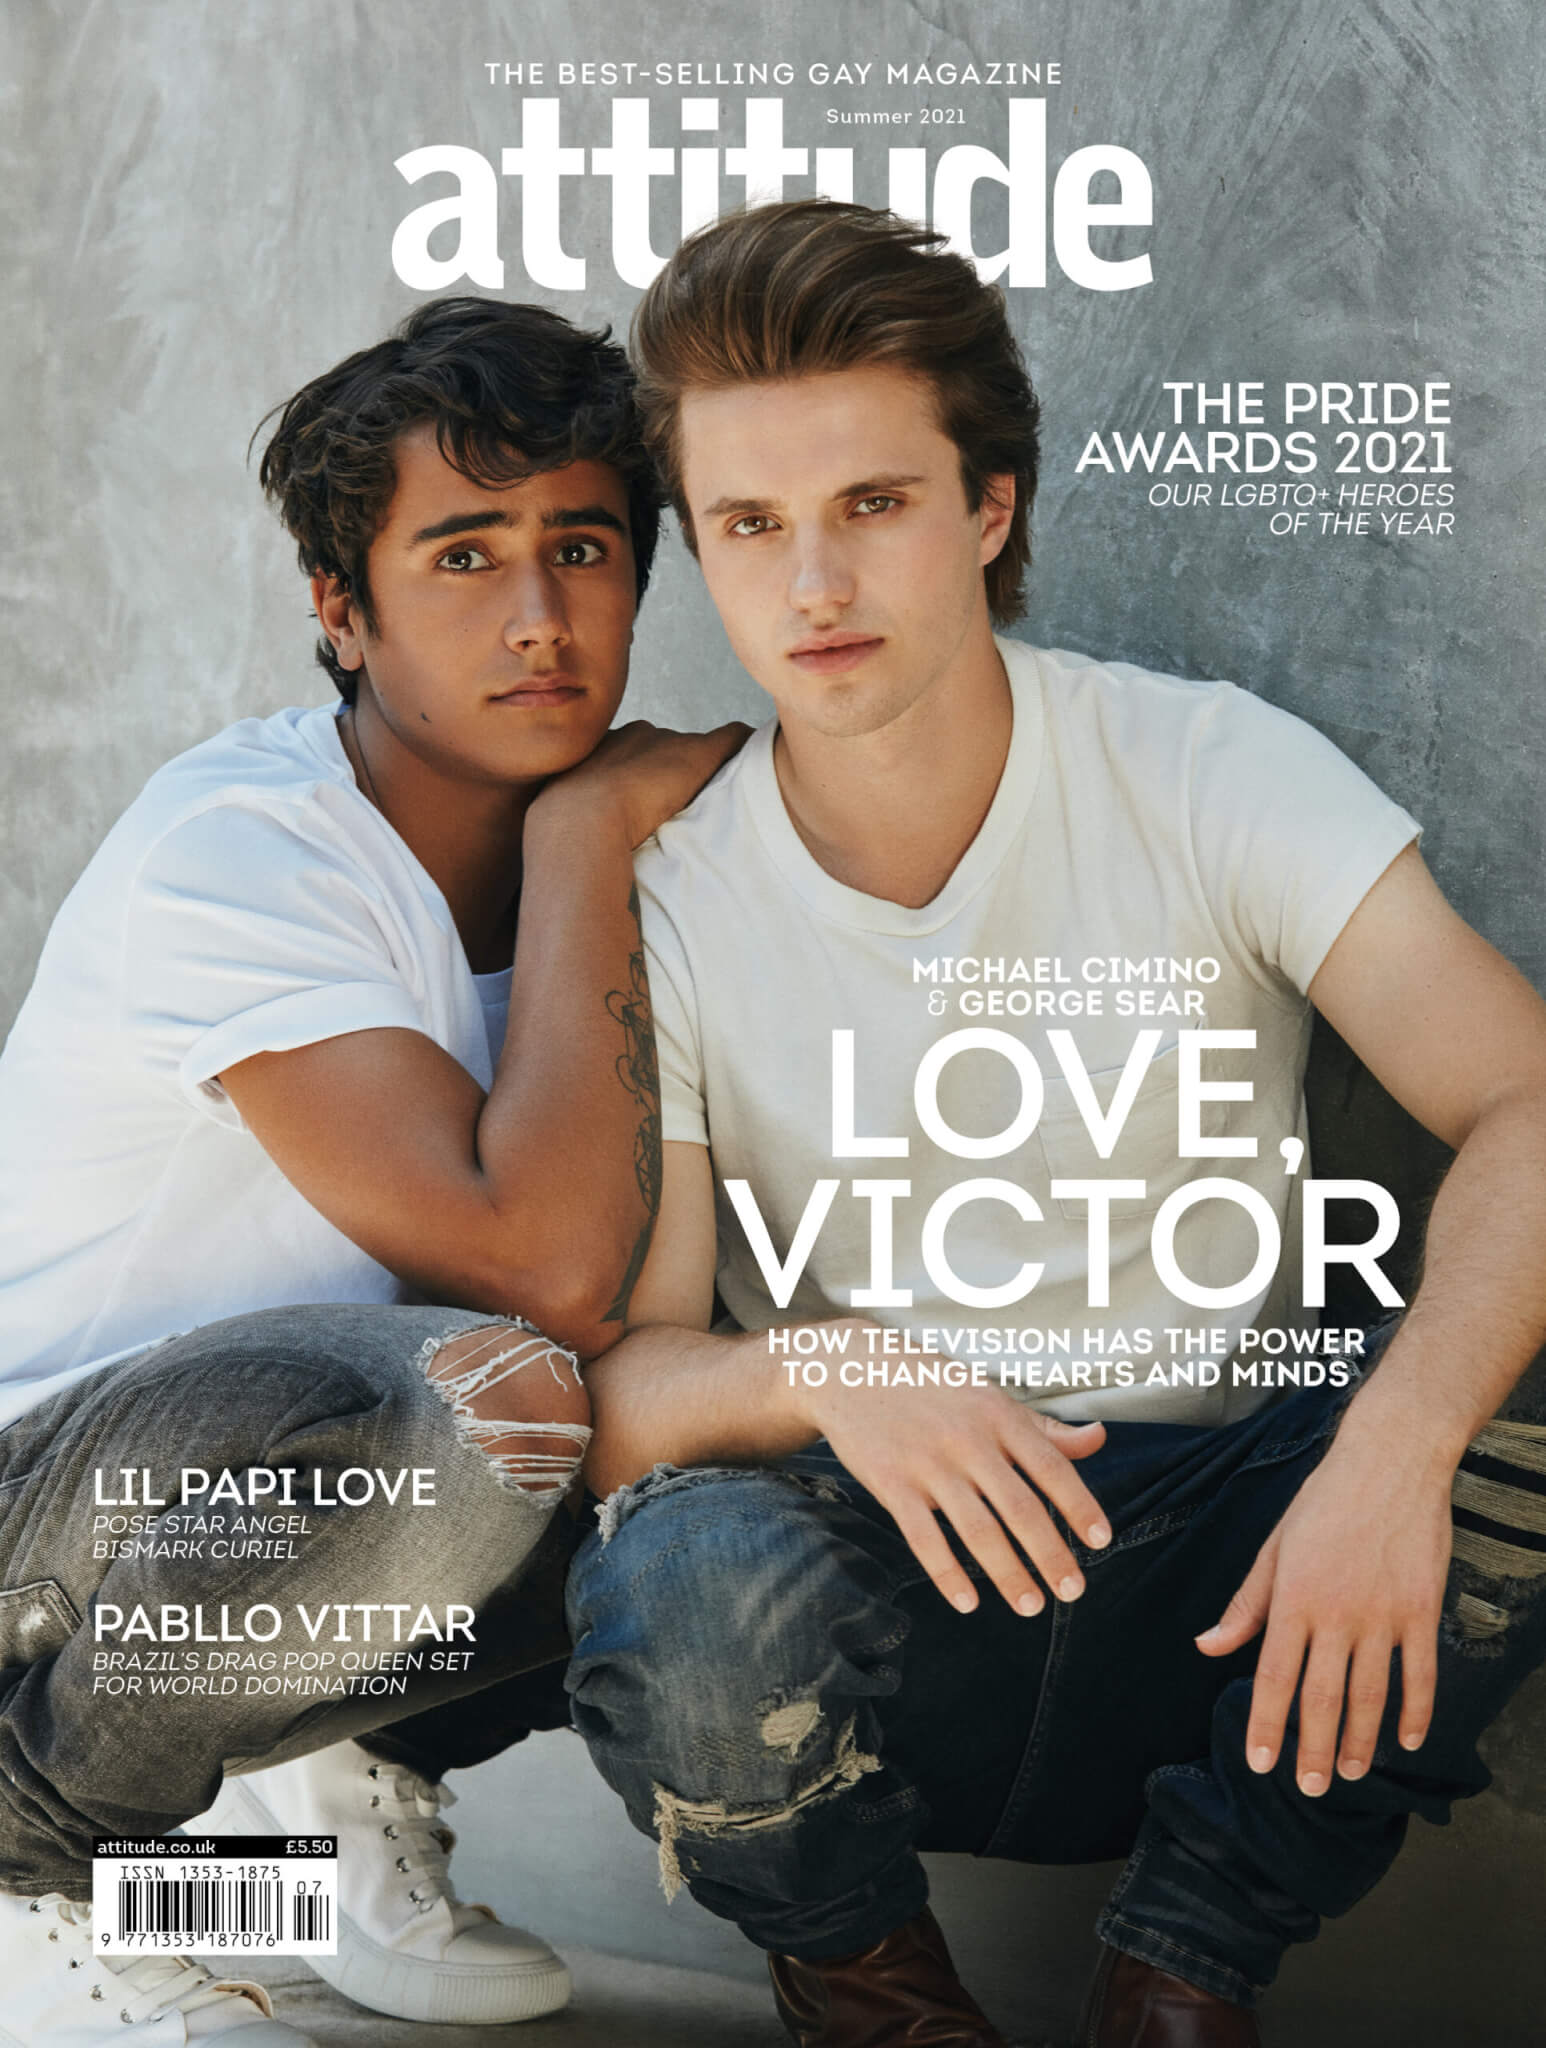 Love, Victor 2, Michael Cimino e George Sear sfidano l'omofobia di Hollywood - love victor 2 attitude scaled - Gay.it